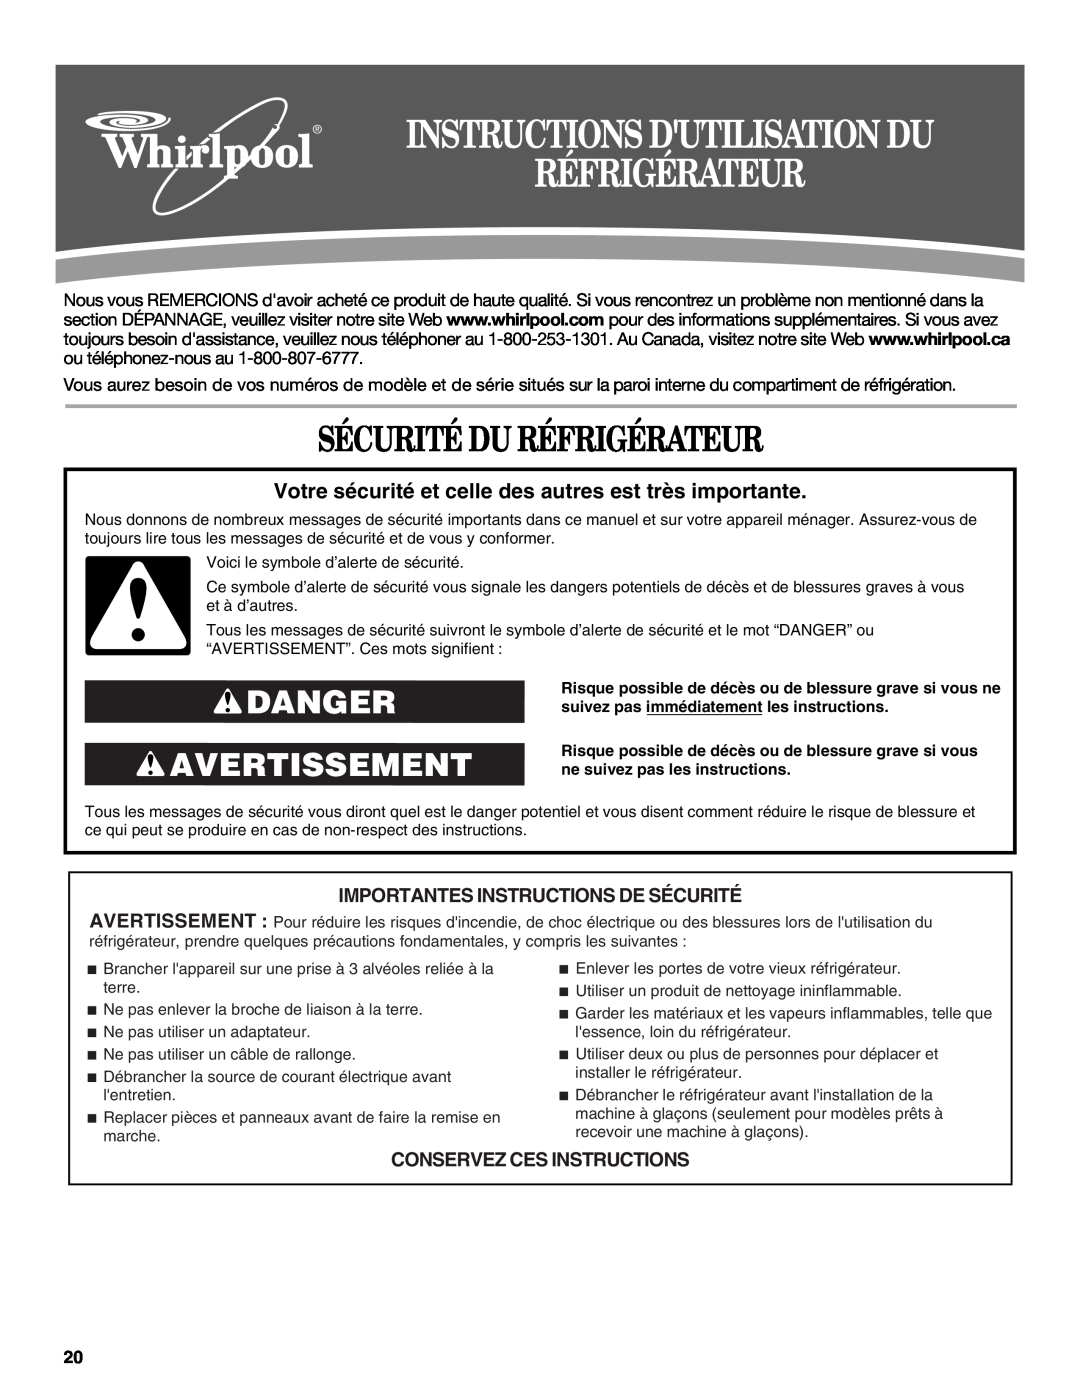 Whirlpool W10343810A Sécurité Du Réfrigérateur, Danger Avertissement, Importantes Instructions De Sécurité 